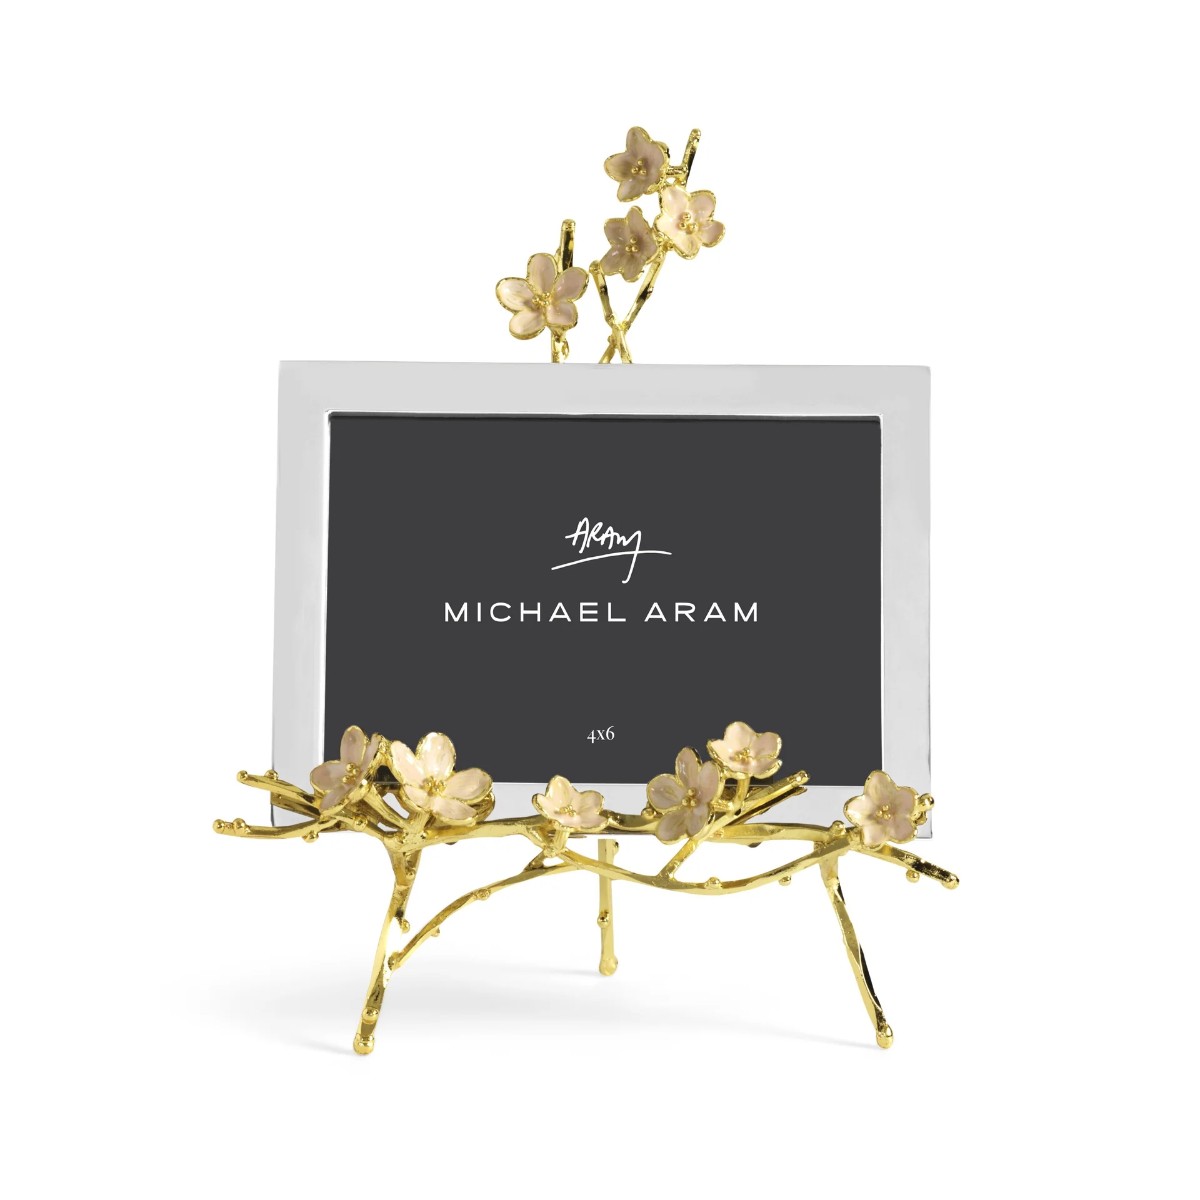 Michael Aram I Cherry Blossom Frame - 4x6 Easel